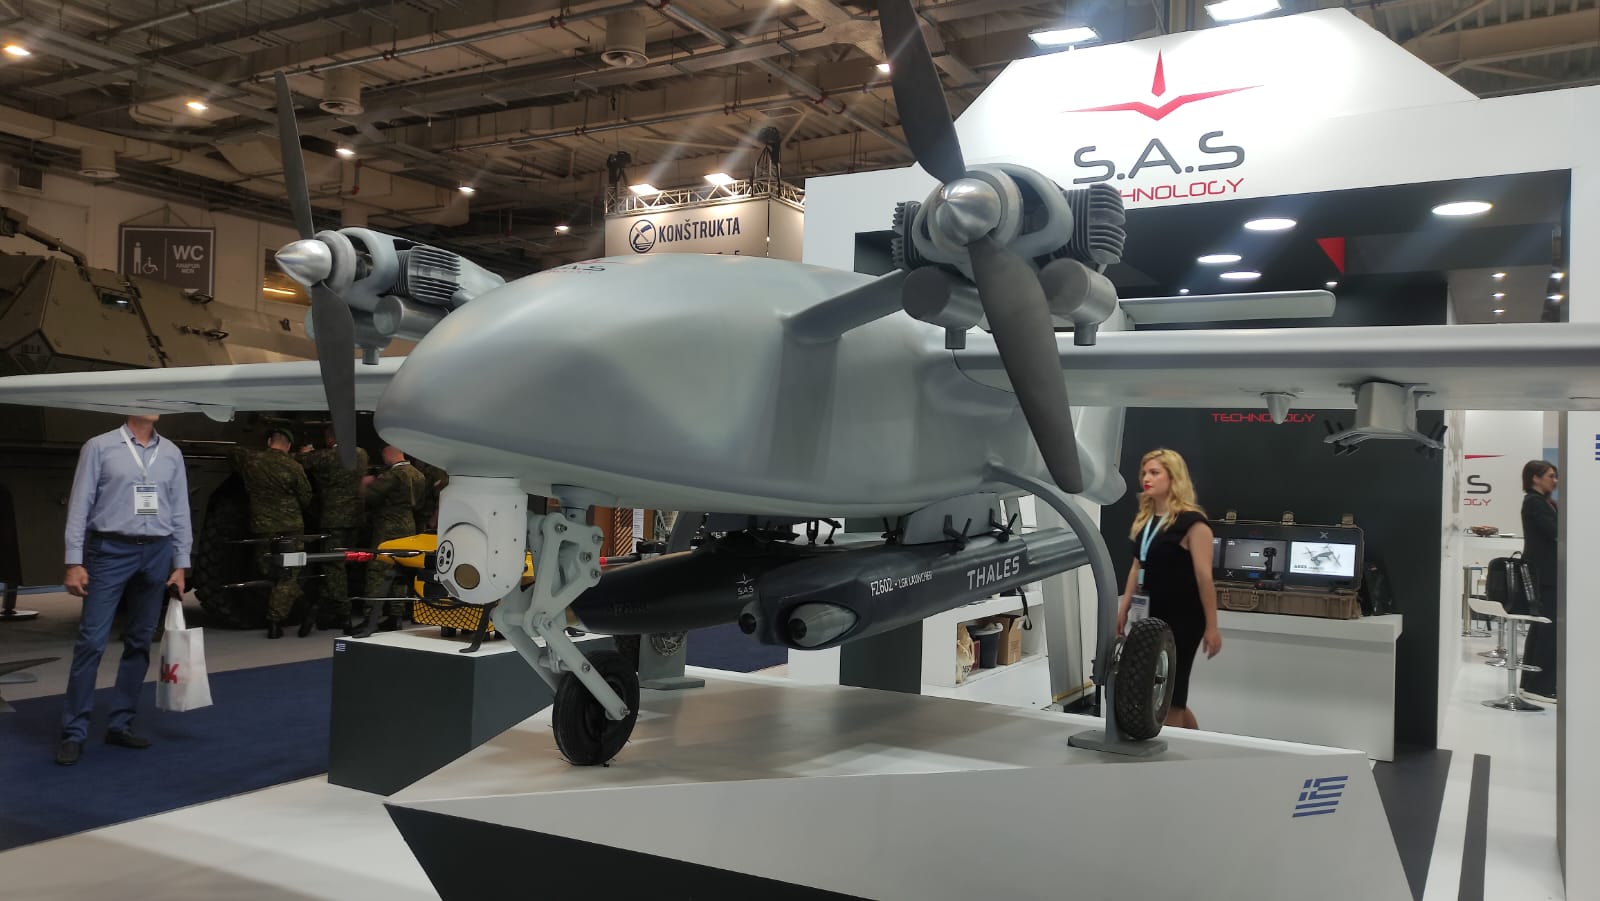 Se presenta Talos II, un dron de reconocimiento con una velocidad de hasta 200 km/h, una autonomía de 500 km y un tiempo de vuelo de más de 20 horas.